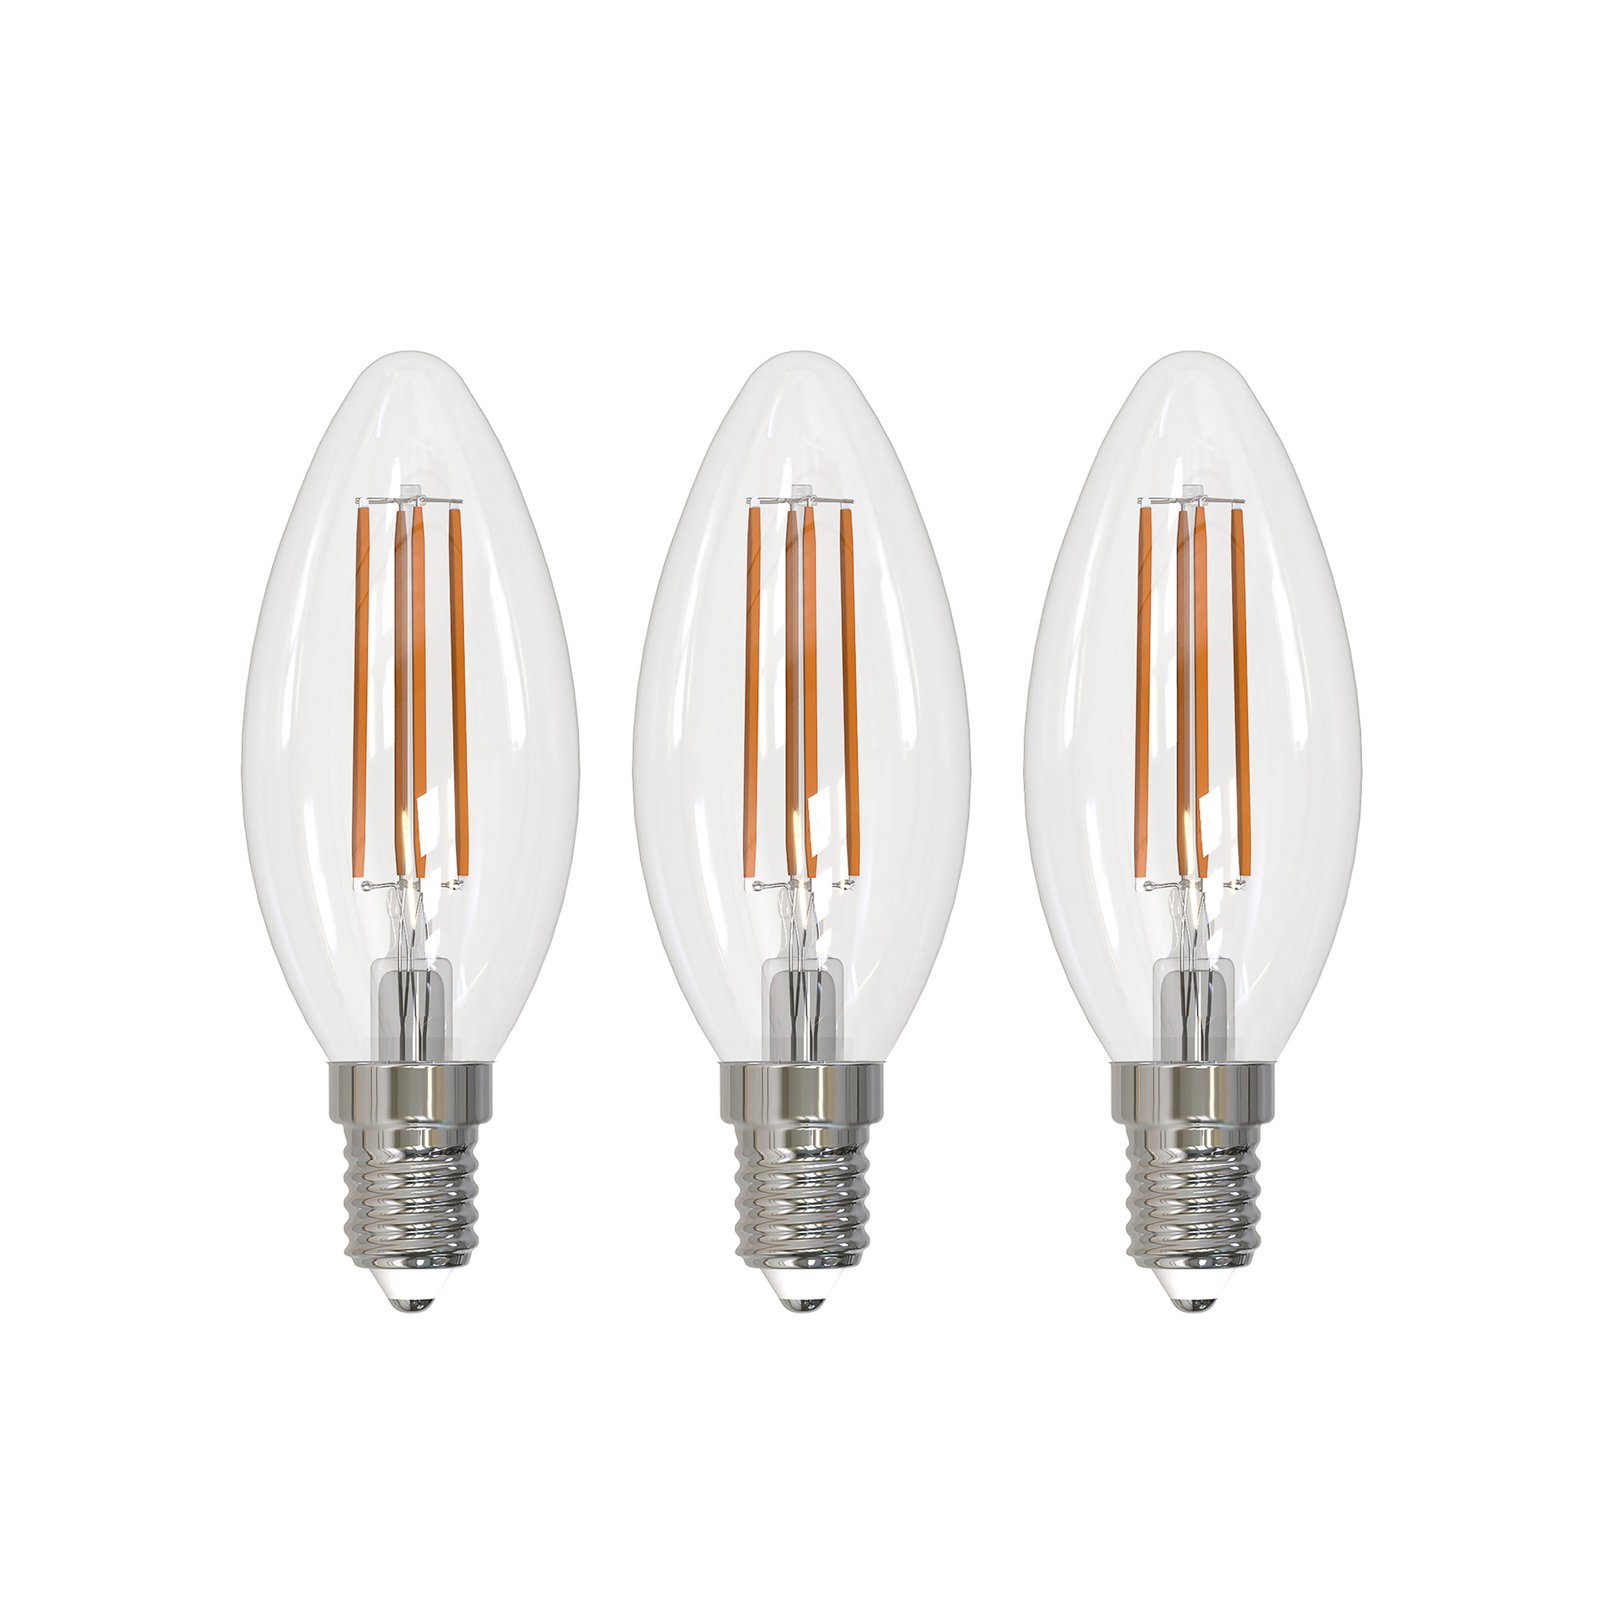 Arcchio filament LED bulb E14 candle, set of 3, 2700 K